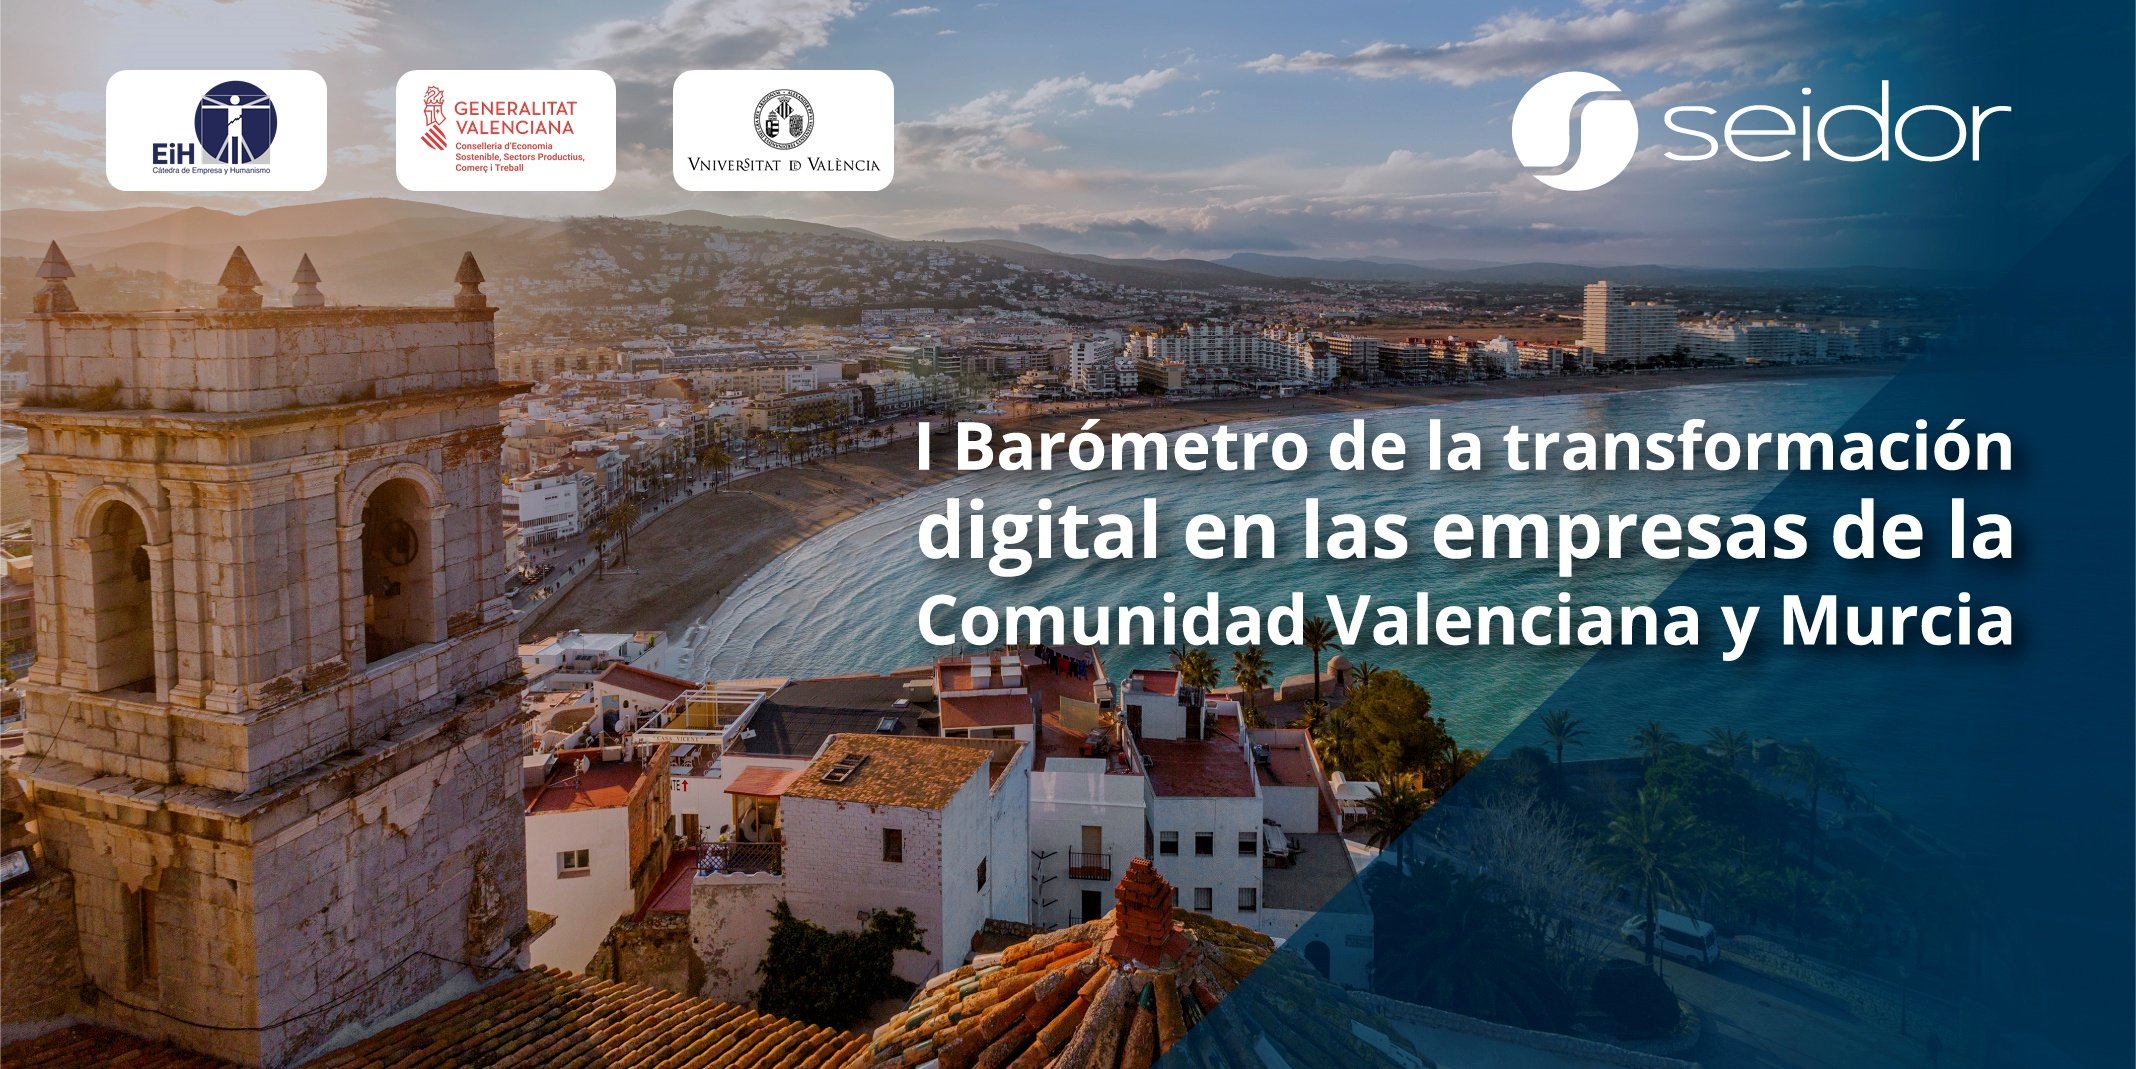 Barometro_Transformaciondigital_Seidor_Valencia_Murcia